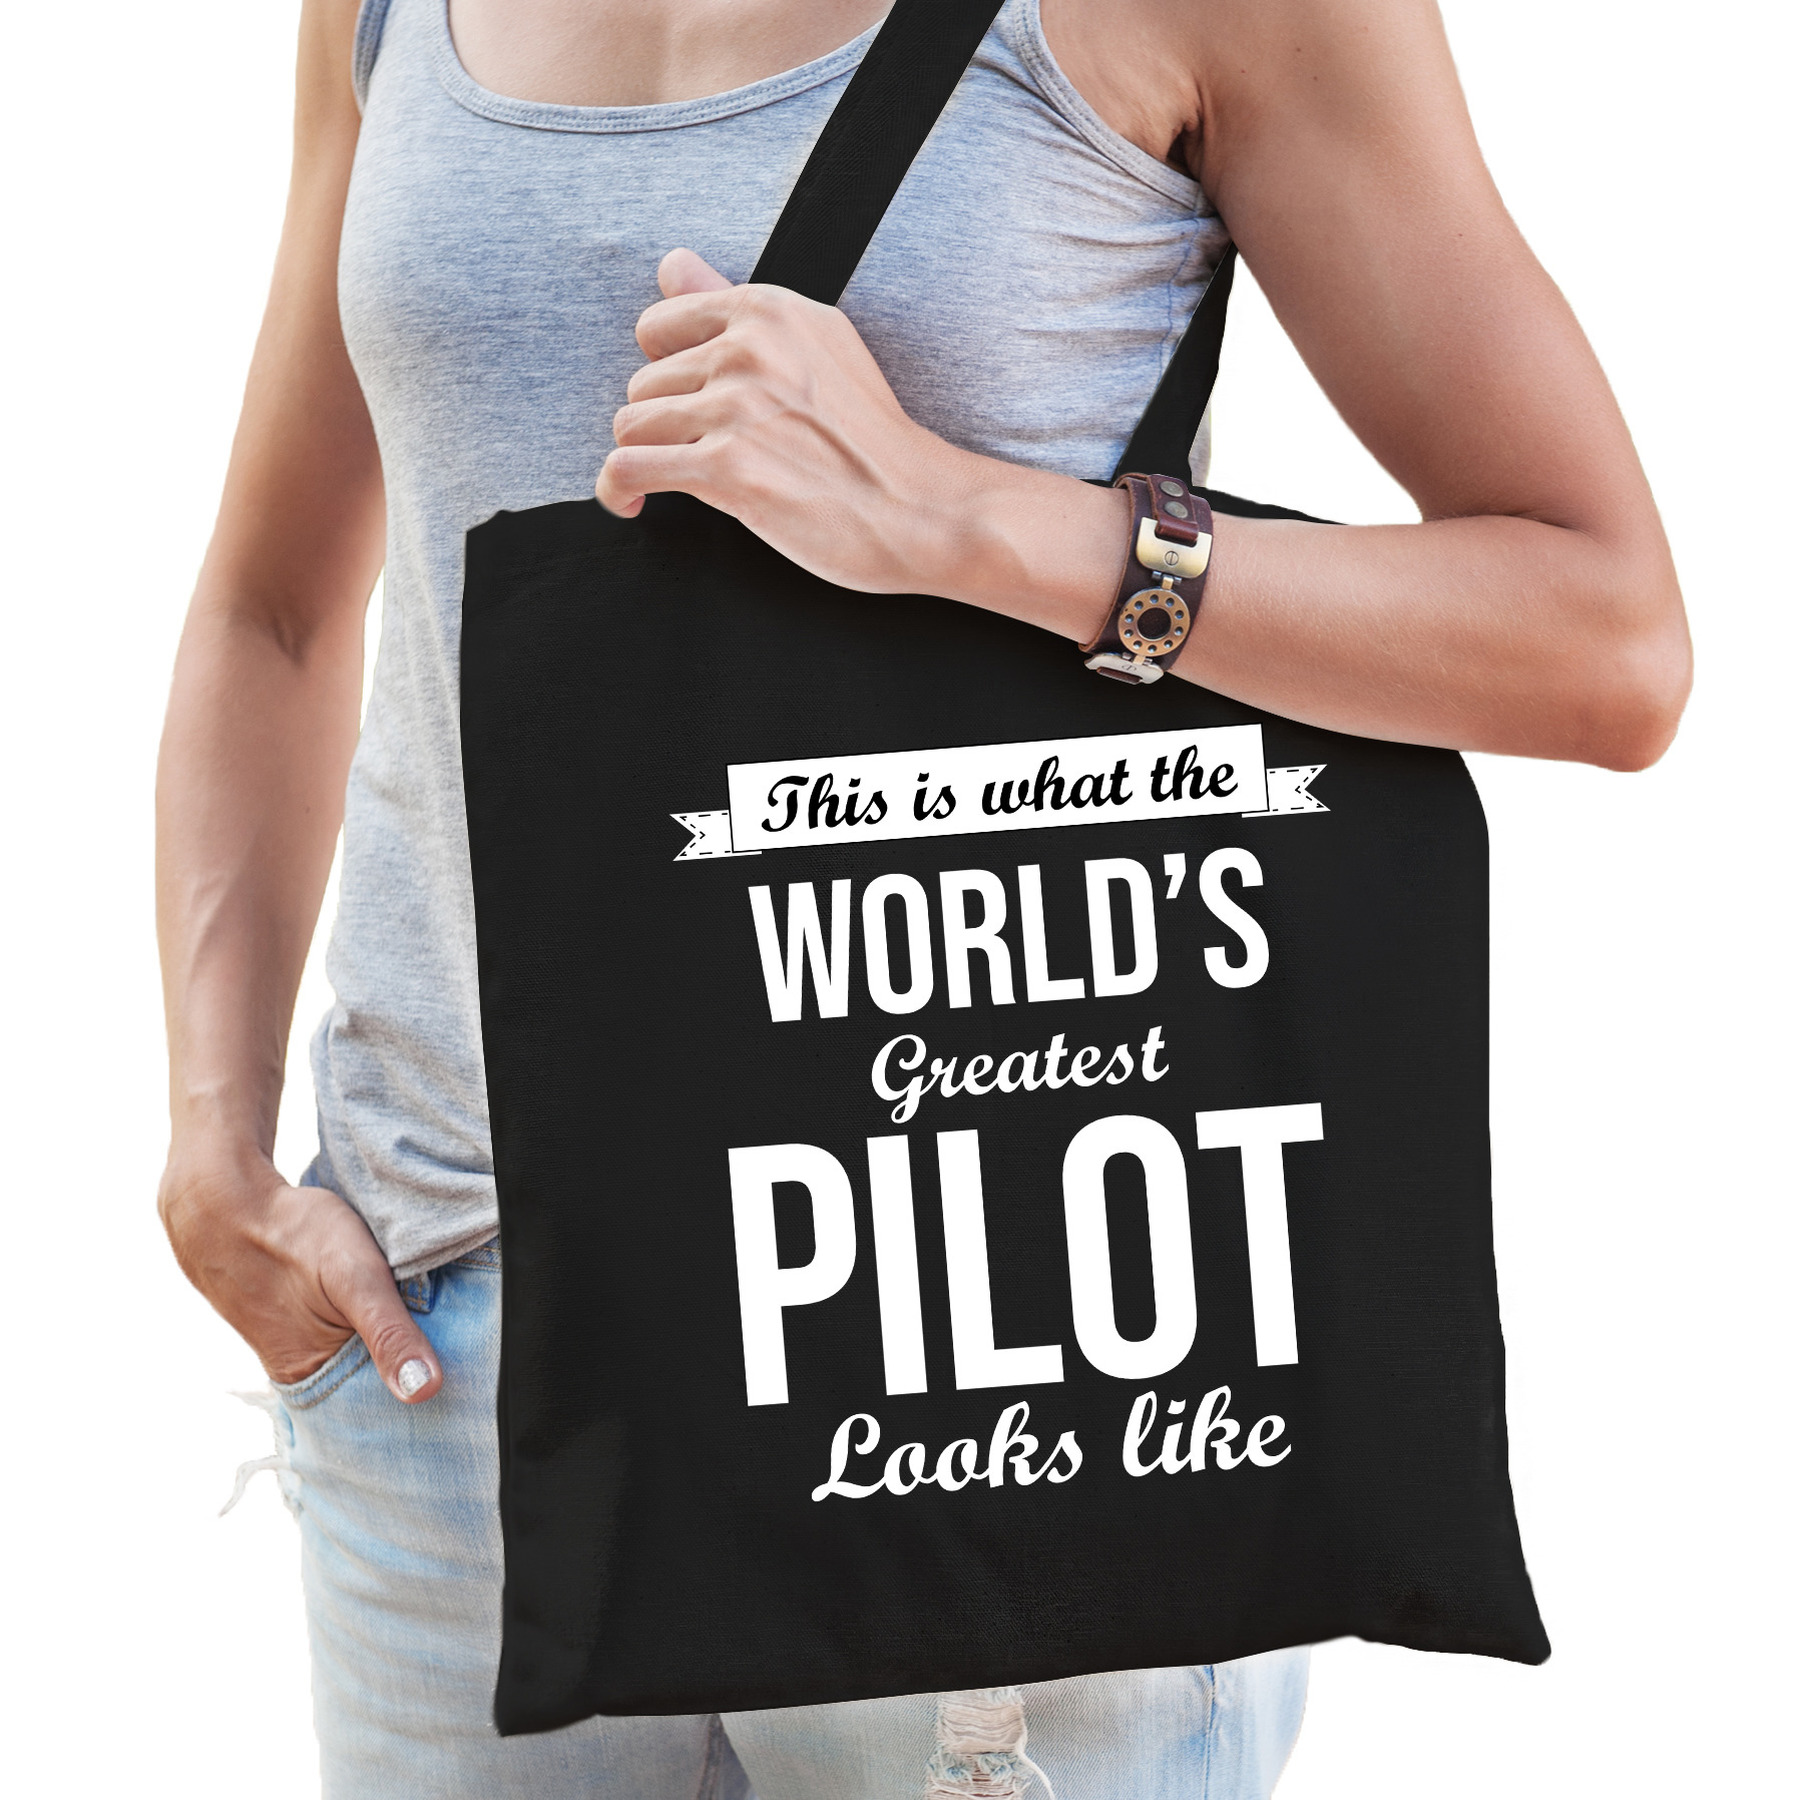 Worlds greatest pilot tas zwart volwassenen - werelds beste piloot cadeau tas